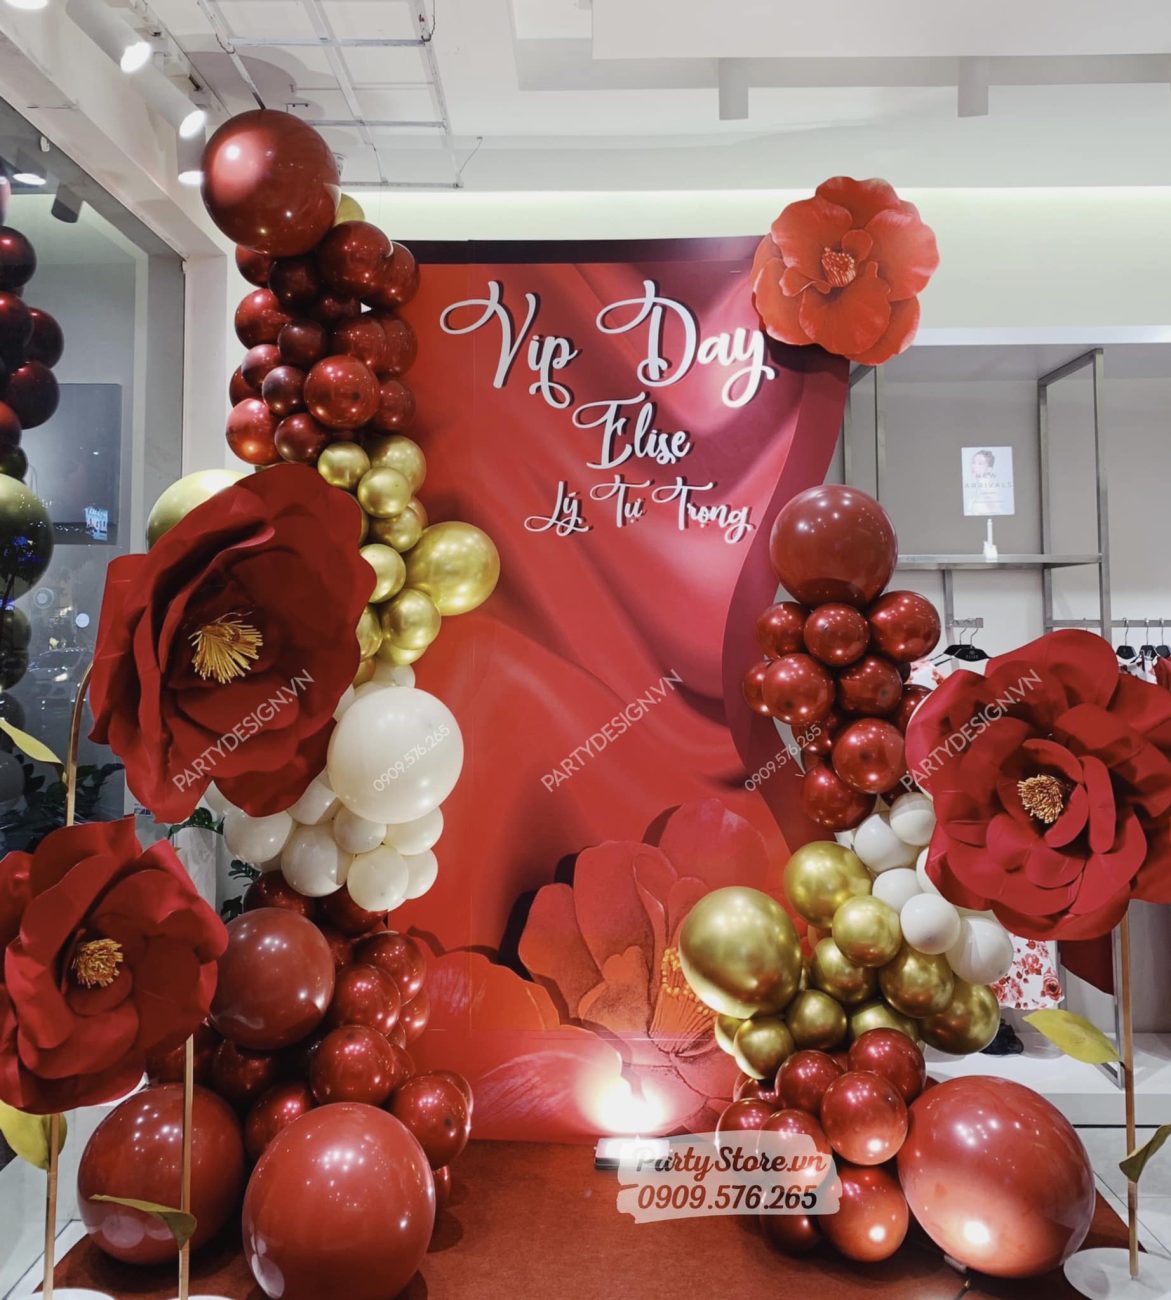 Trang trí event VIP DAY của Elise Lý Tự Trọng, tone màu đỏ và hoa khổng lồ